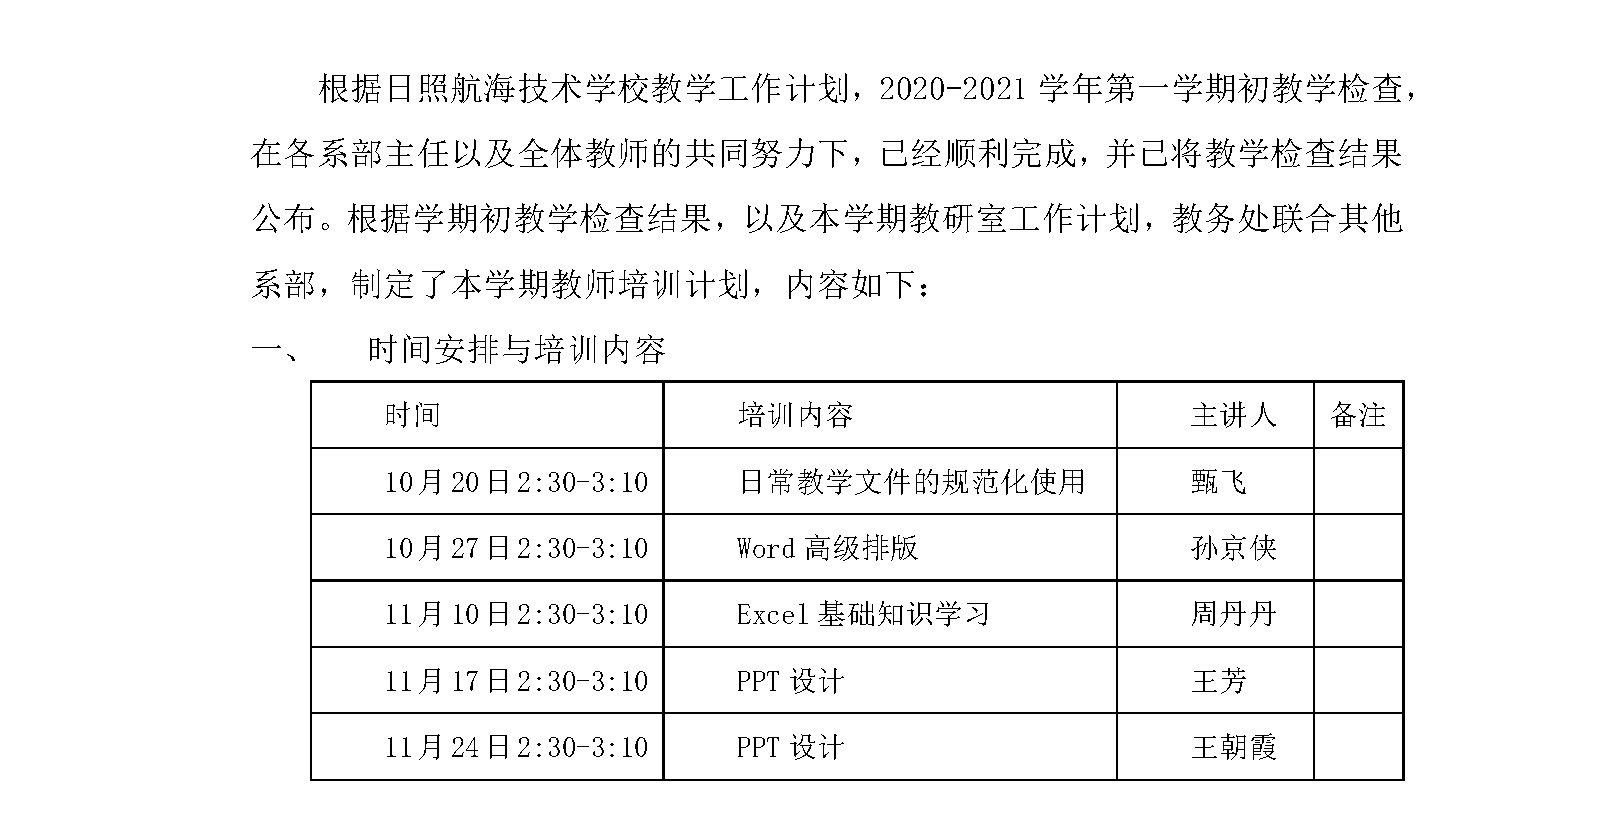 10 20-21-1教师学习培训计划.png